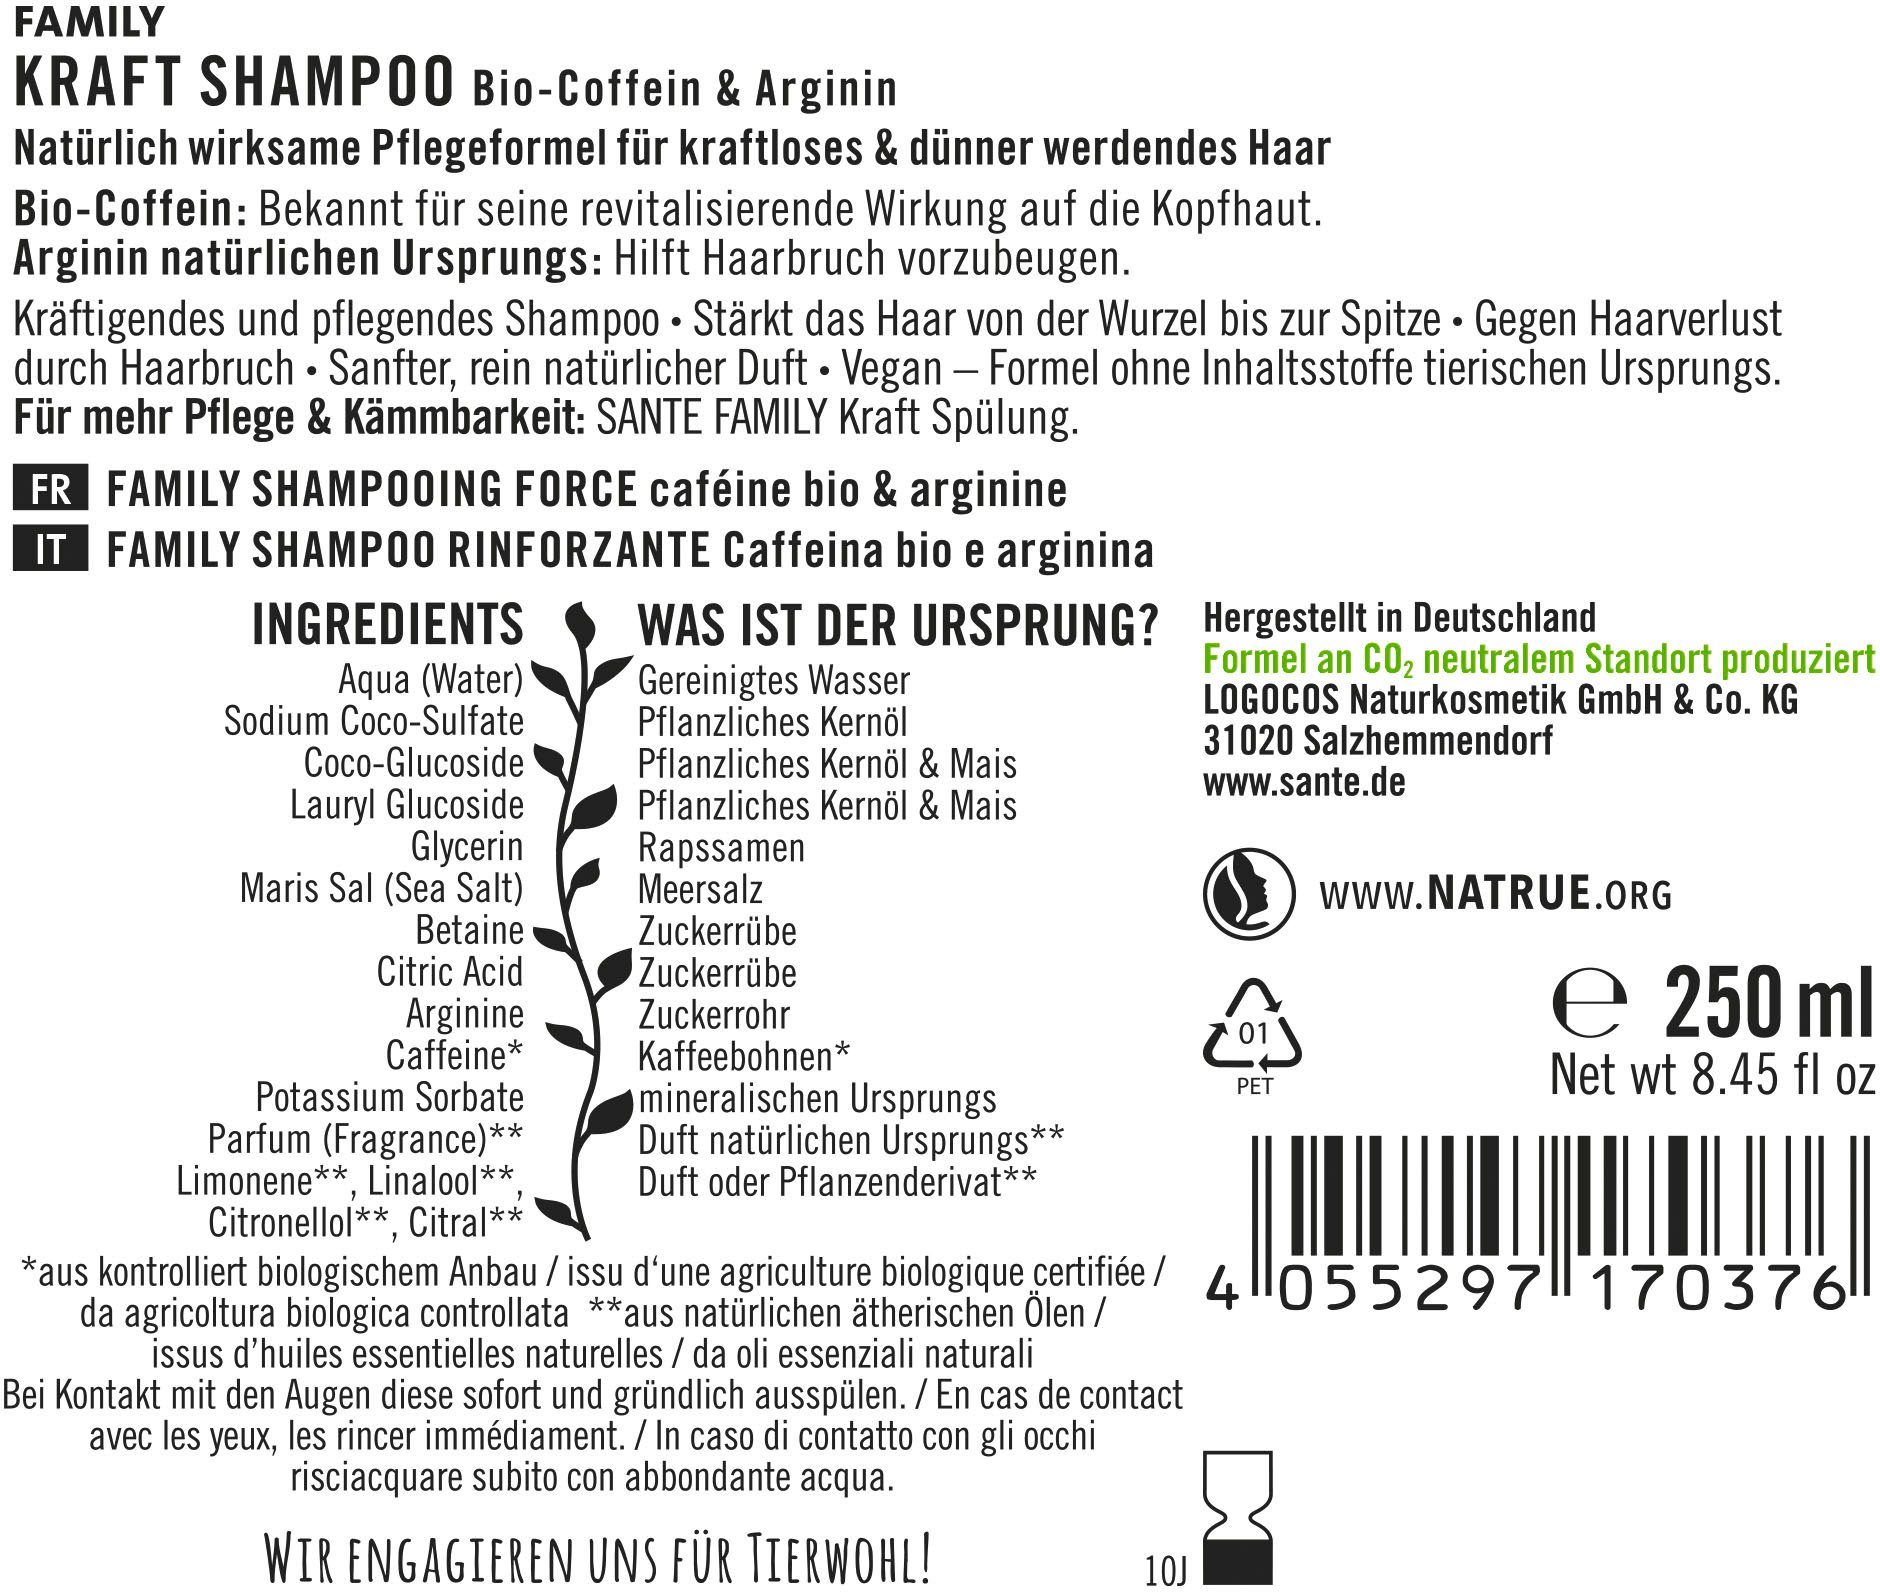 SANTE Shampoo Kraft Haarshampoo